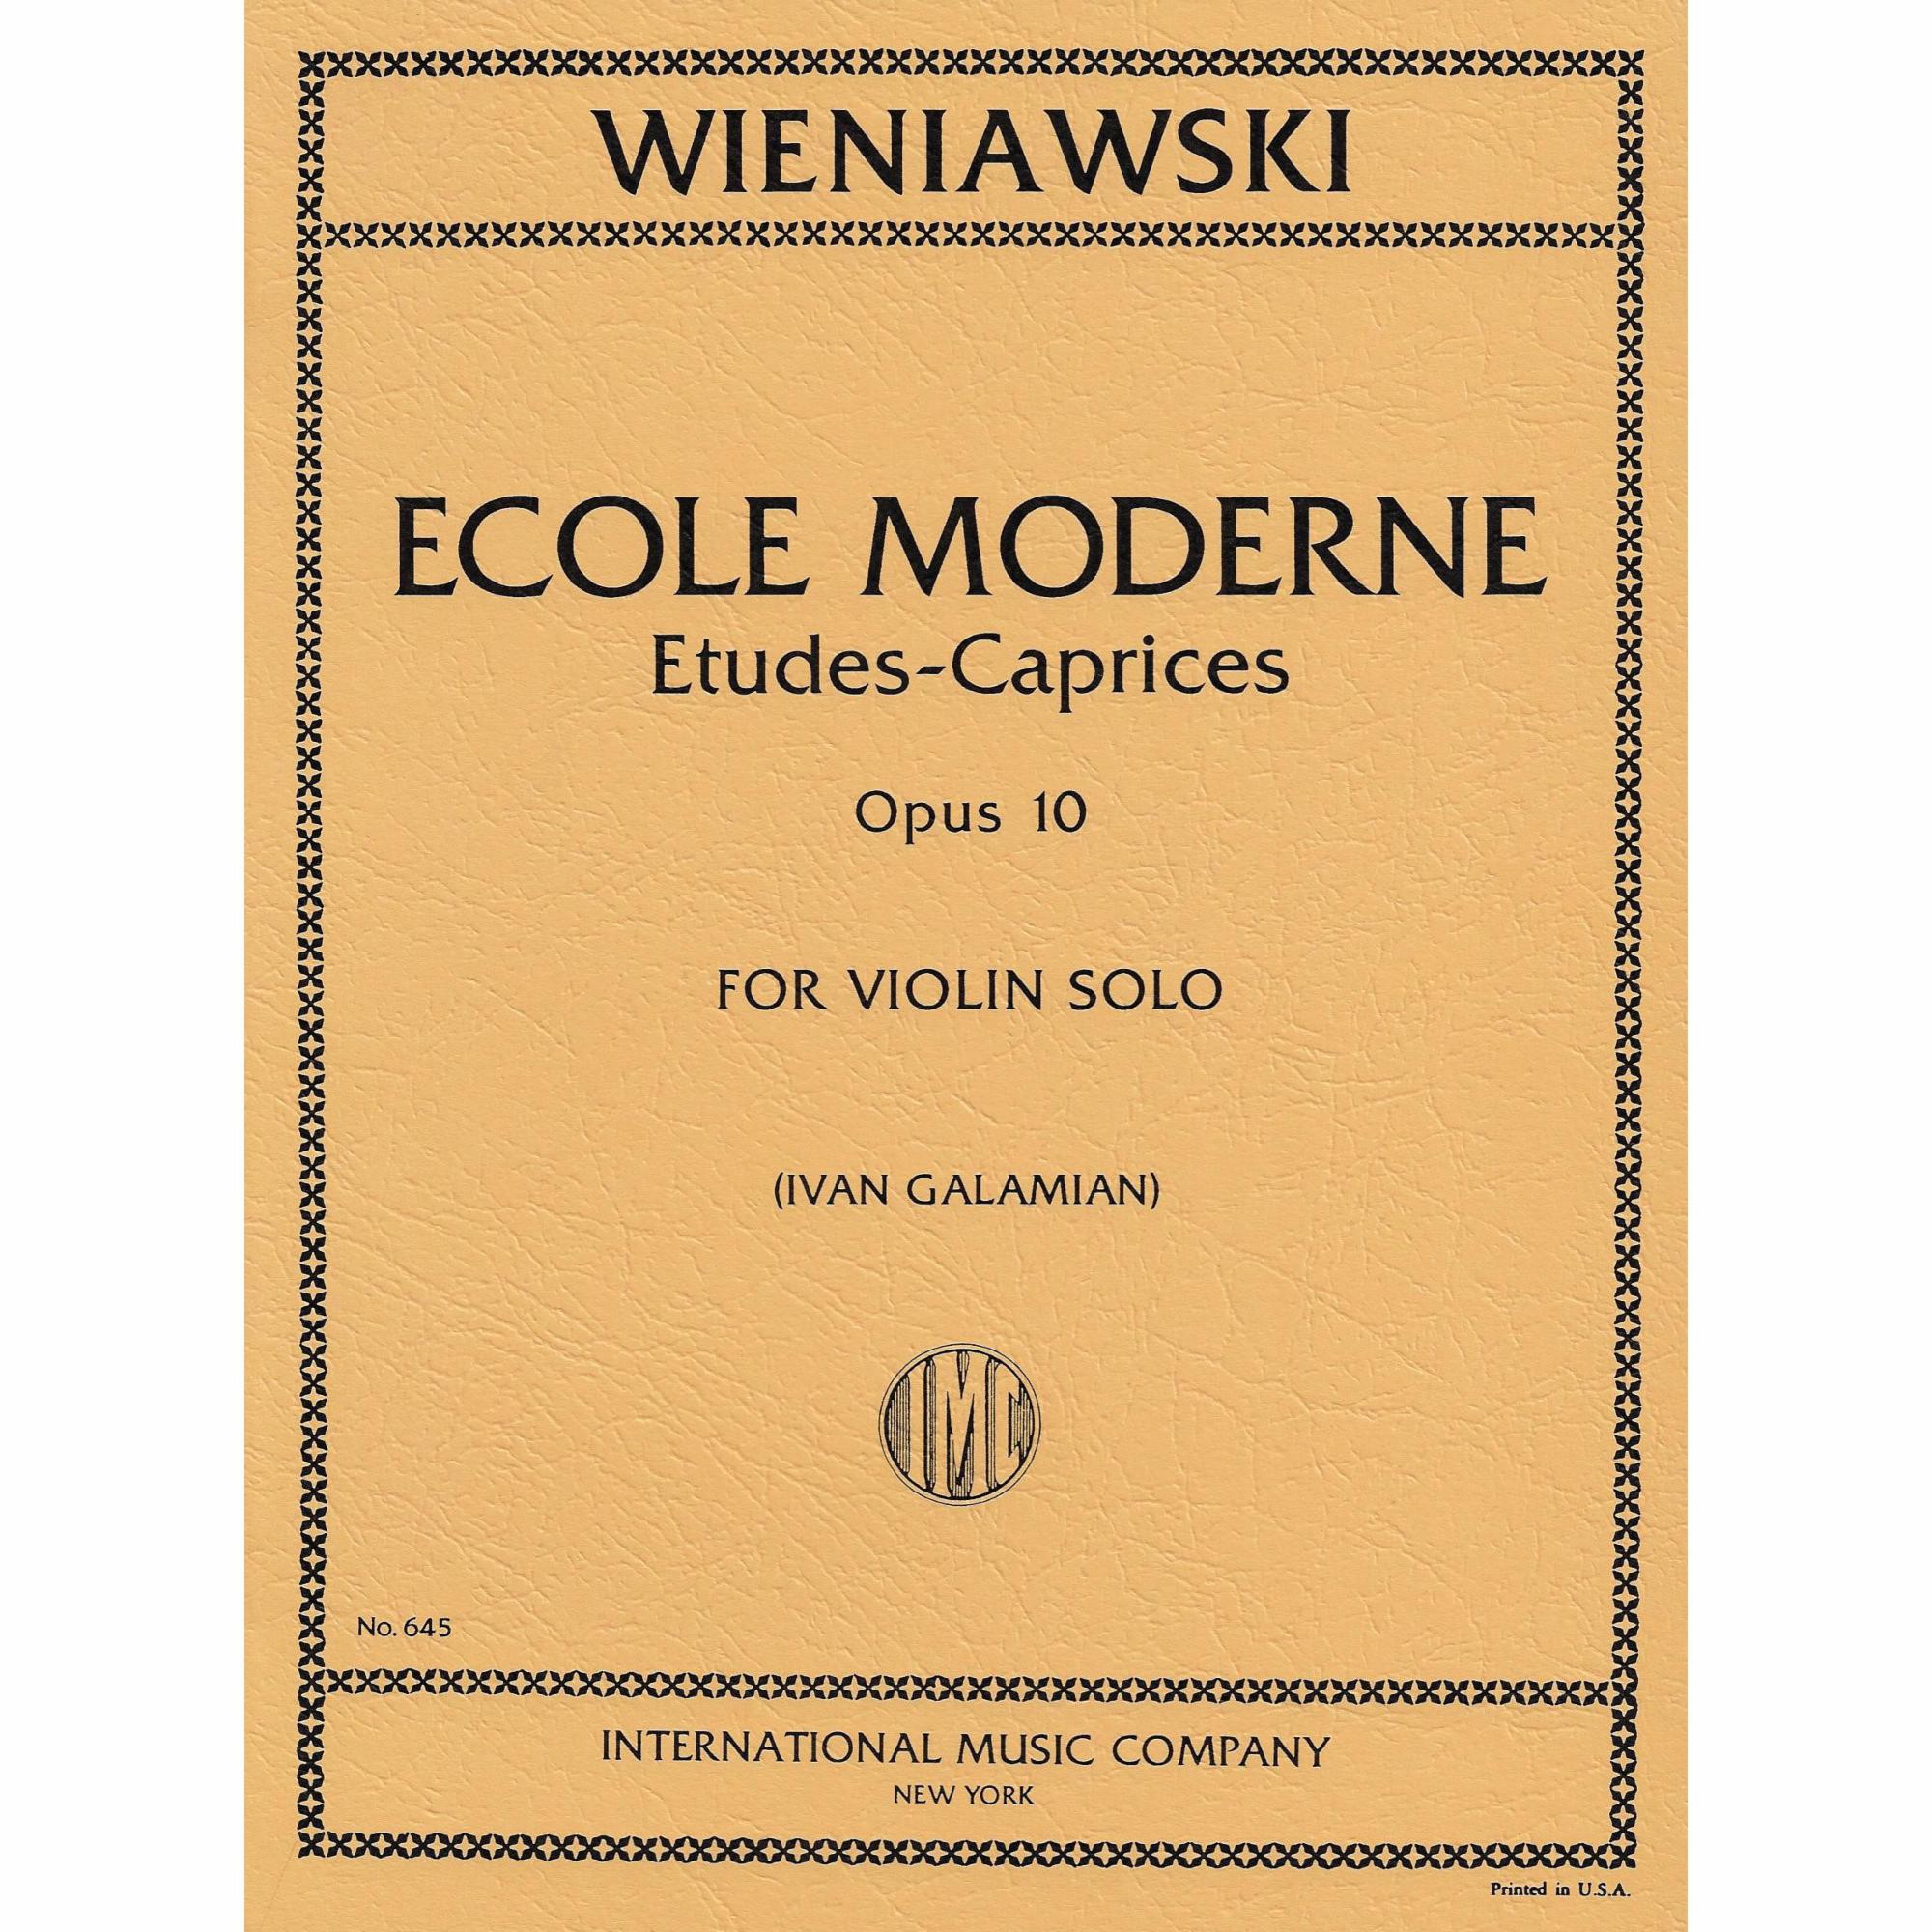 Wieniawski -- Ecole Moderne, Op. 10 for Violin